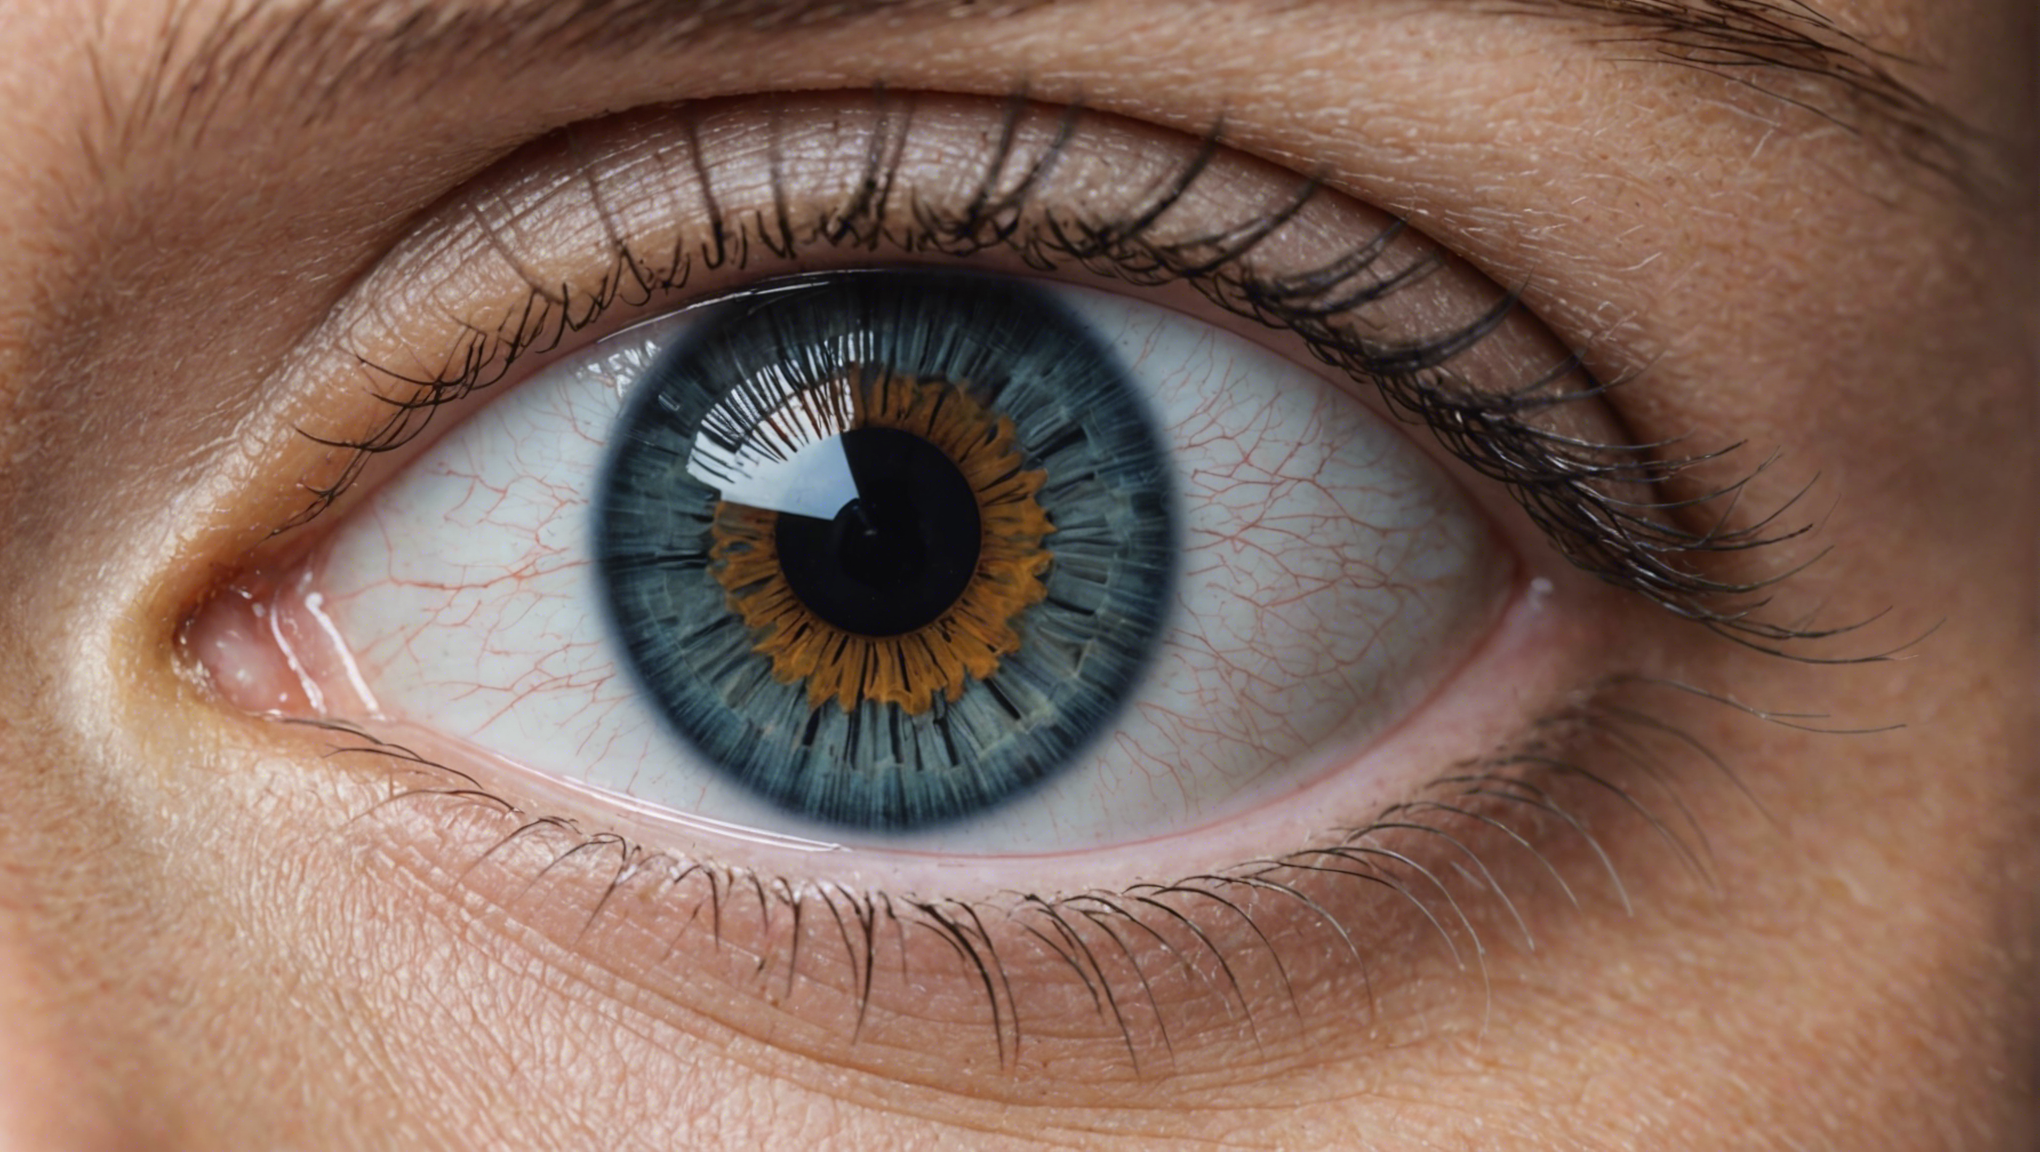 découvrez notre guide des prix pour l'opération des yeux et faites le bon choix pour votre procédure ophtalmologique.